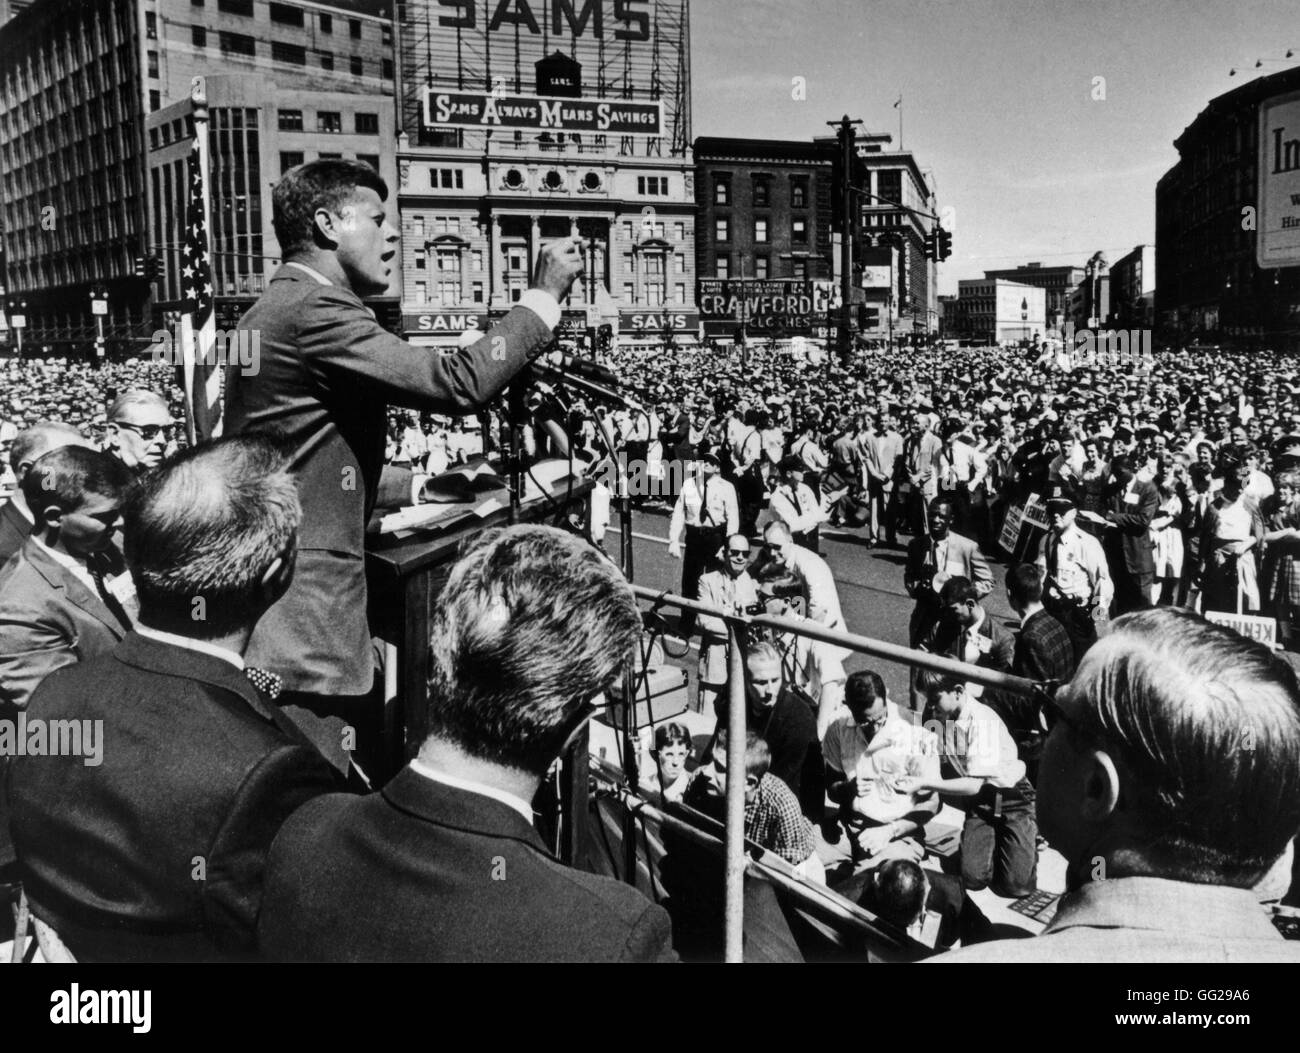 Primer lunes de septiembre de 1960, Día del Trabajo, Detroit, Michigan. El Senador John Kennedy, candidato del Partido Demócrata a la presidencia, está dando un discurso a la multitud. De septiembre de 1960 Estados Unidos archivos nacionales. Washington Foto de stock